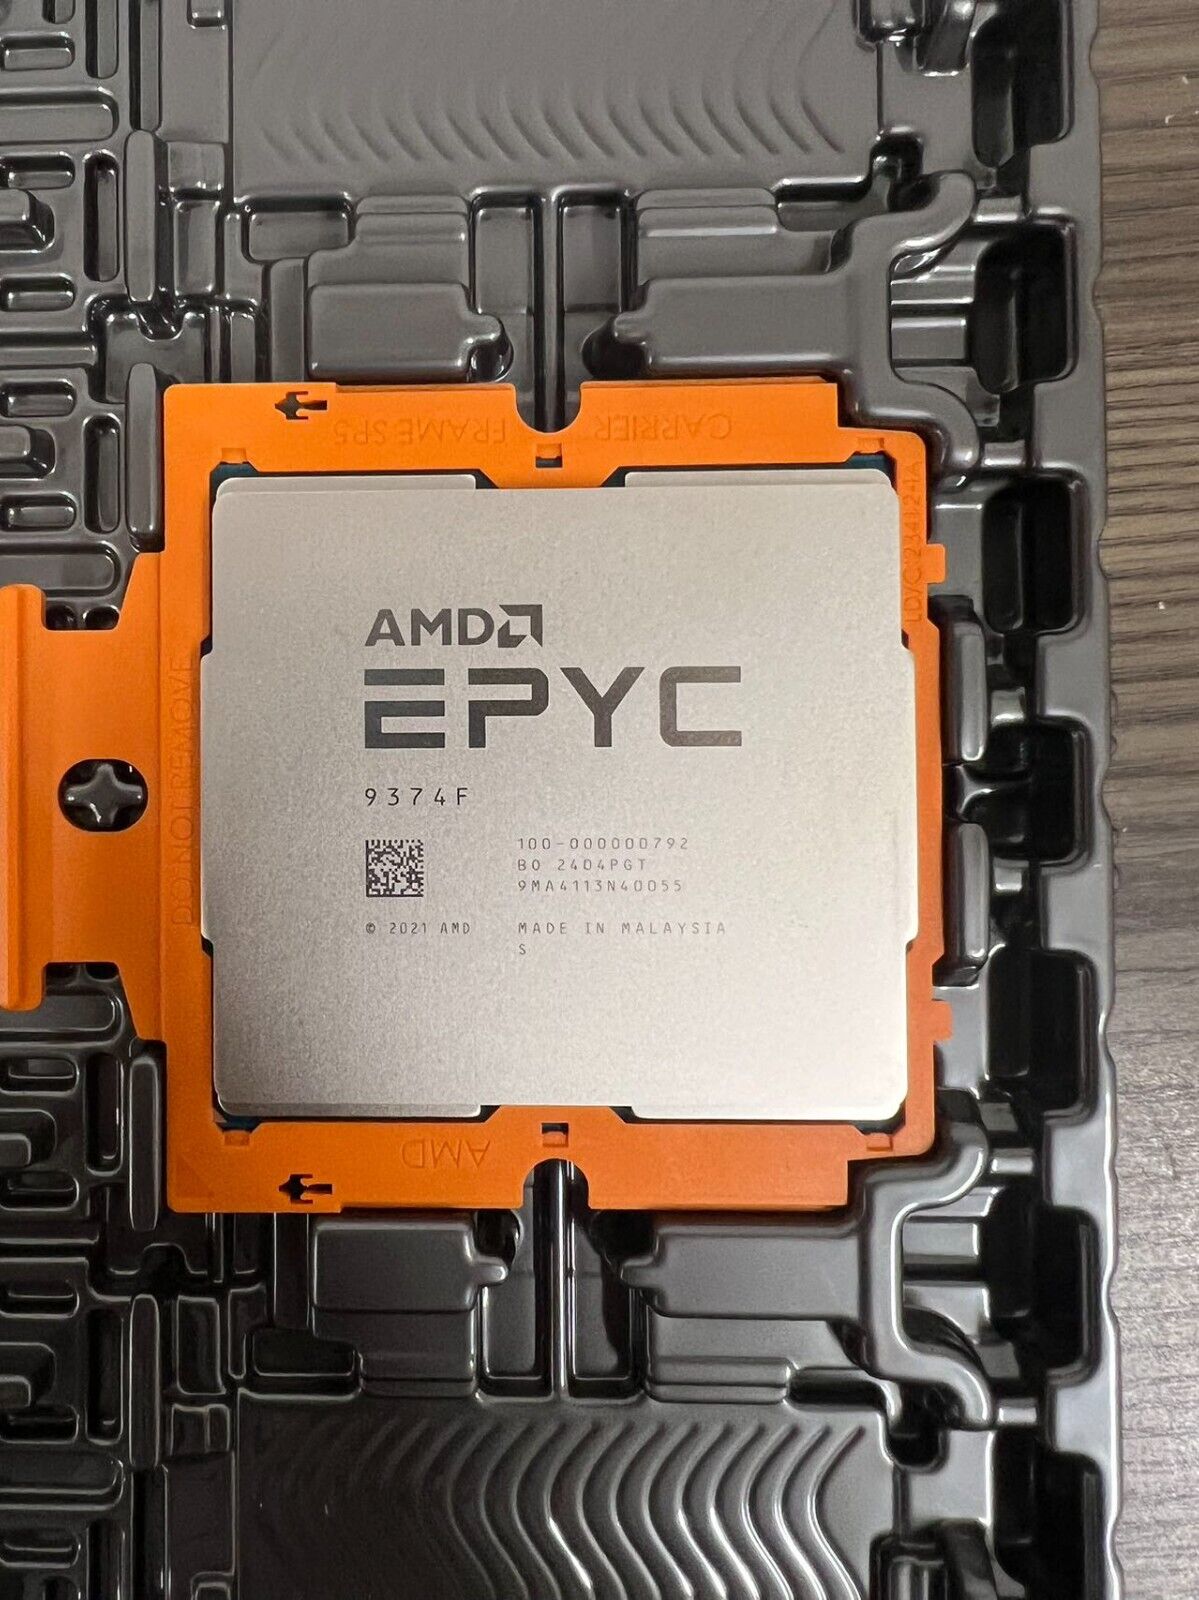 AMD EPYC™ 9374F